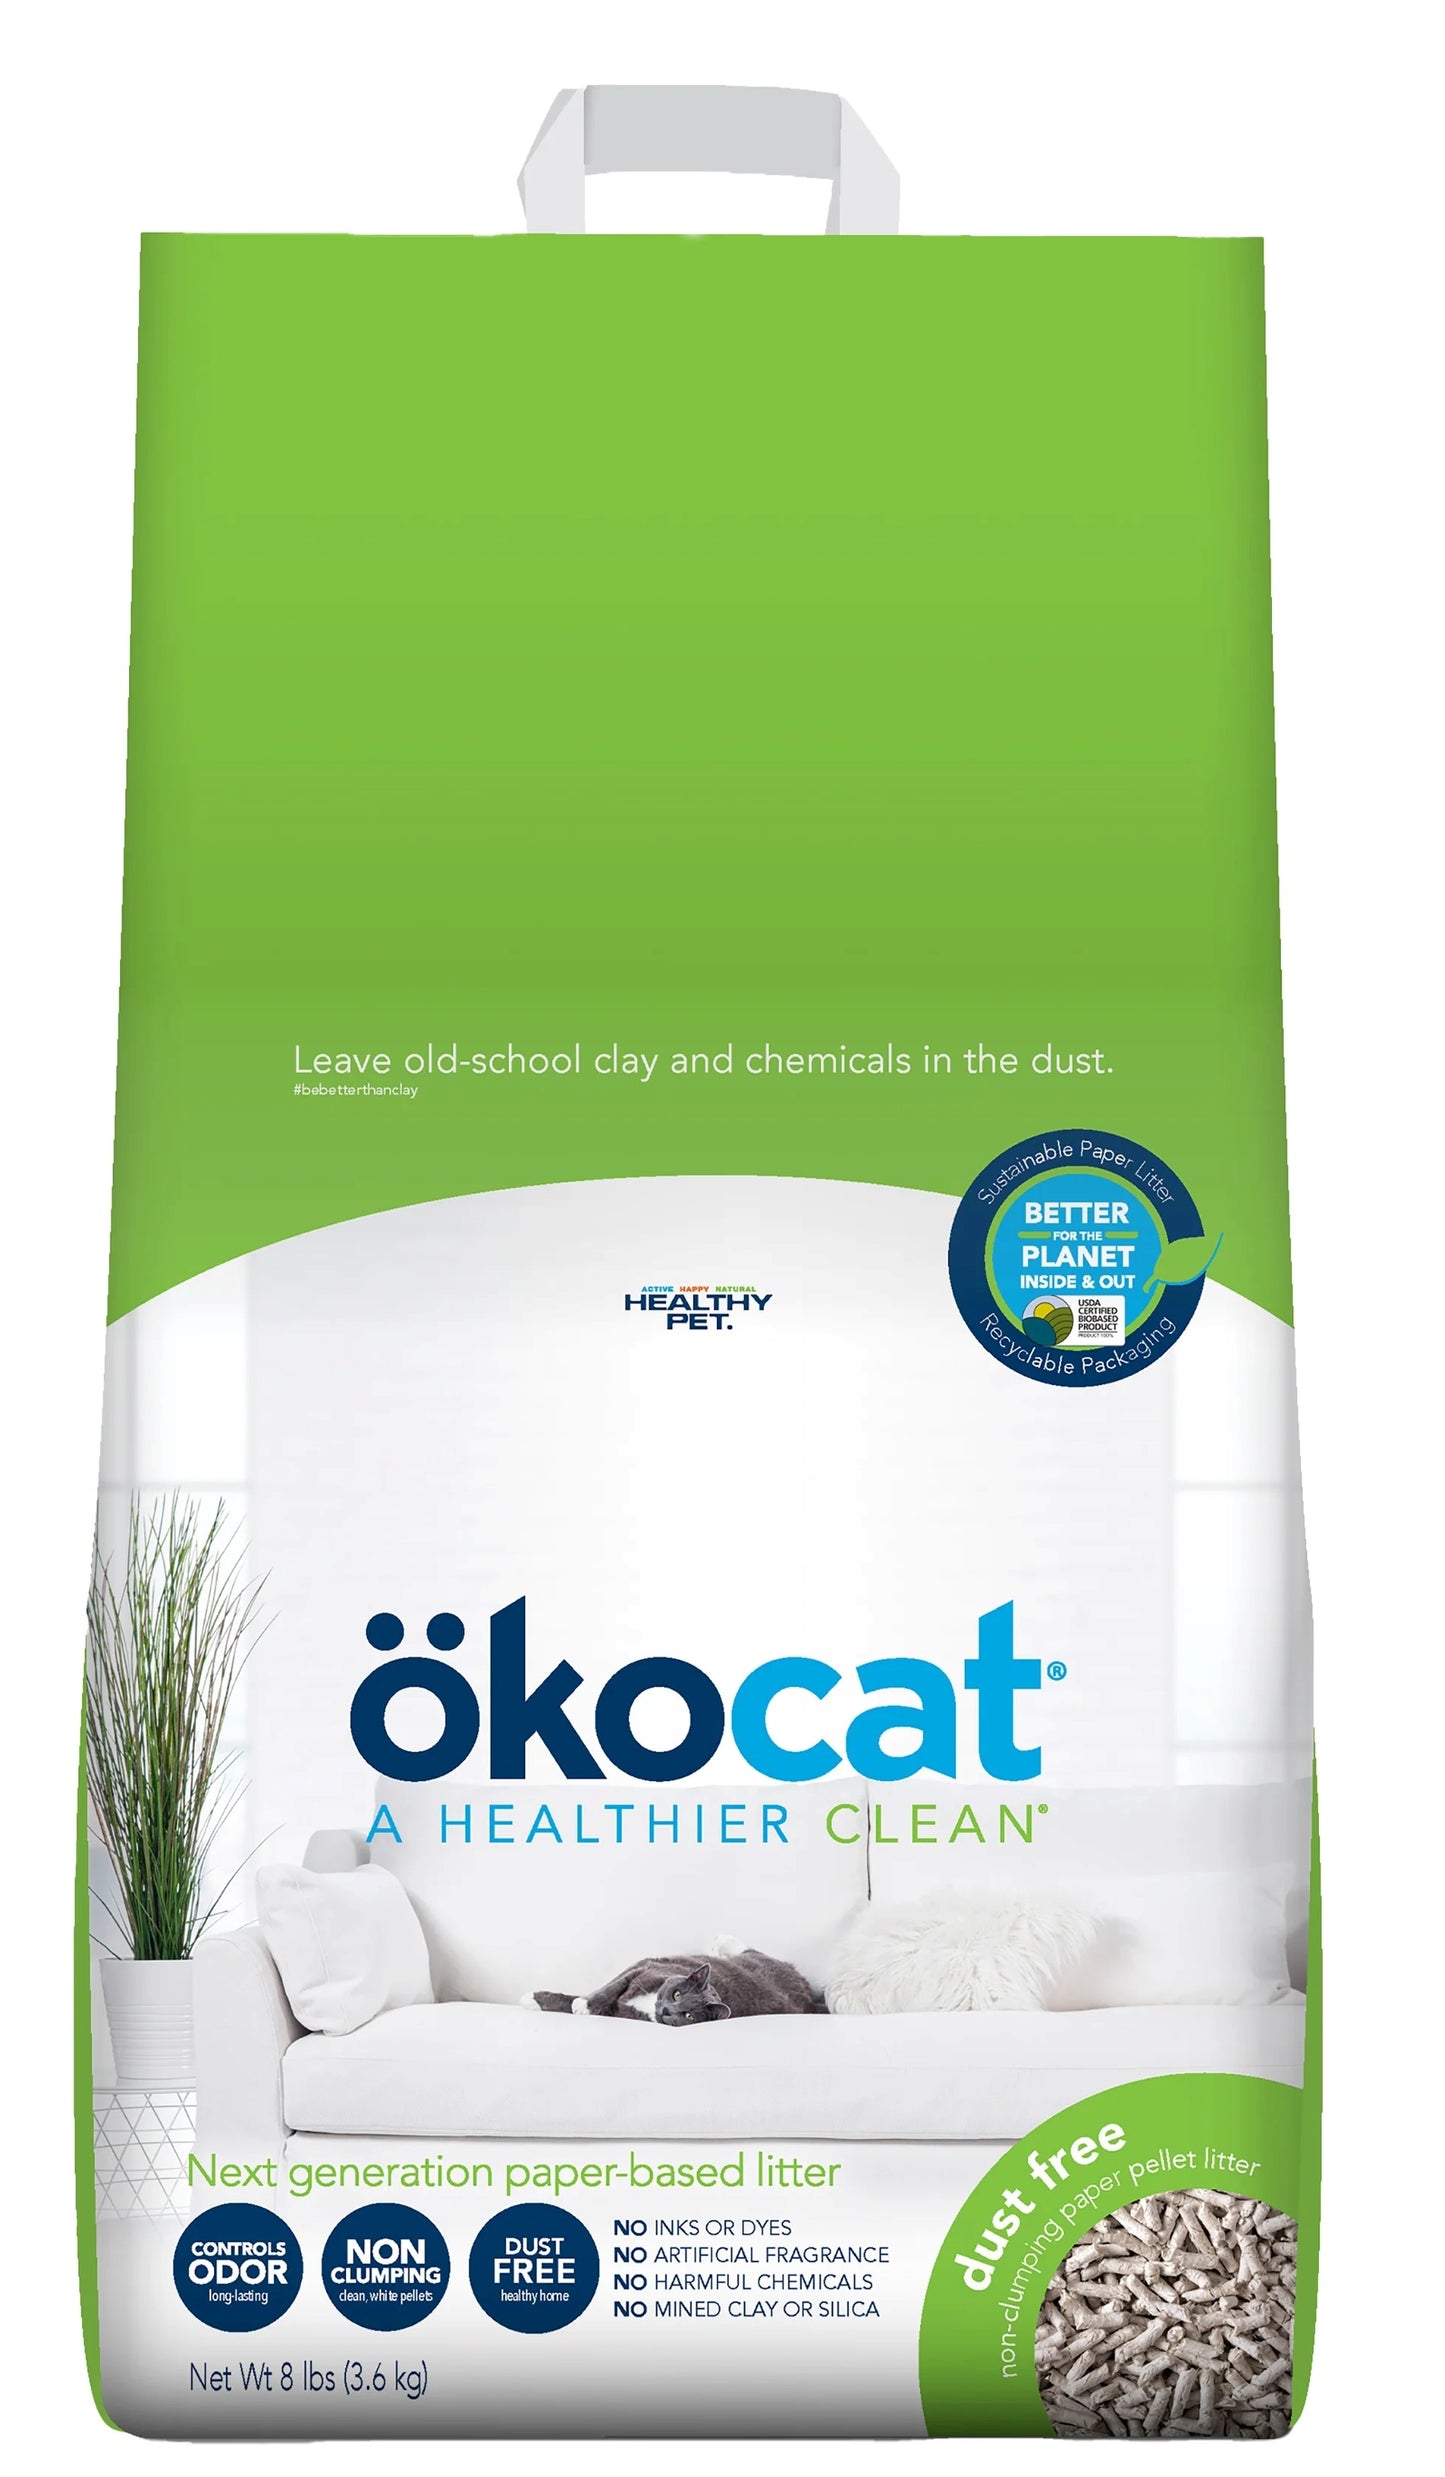 OKOCAT Dust-free Paper Litter, 5.3kg